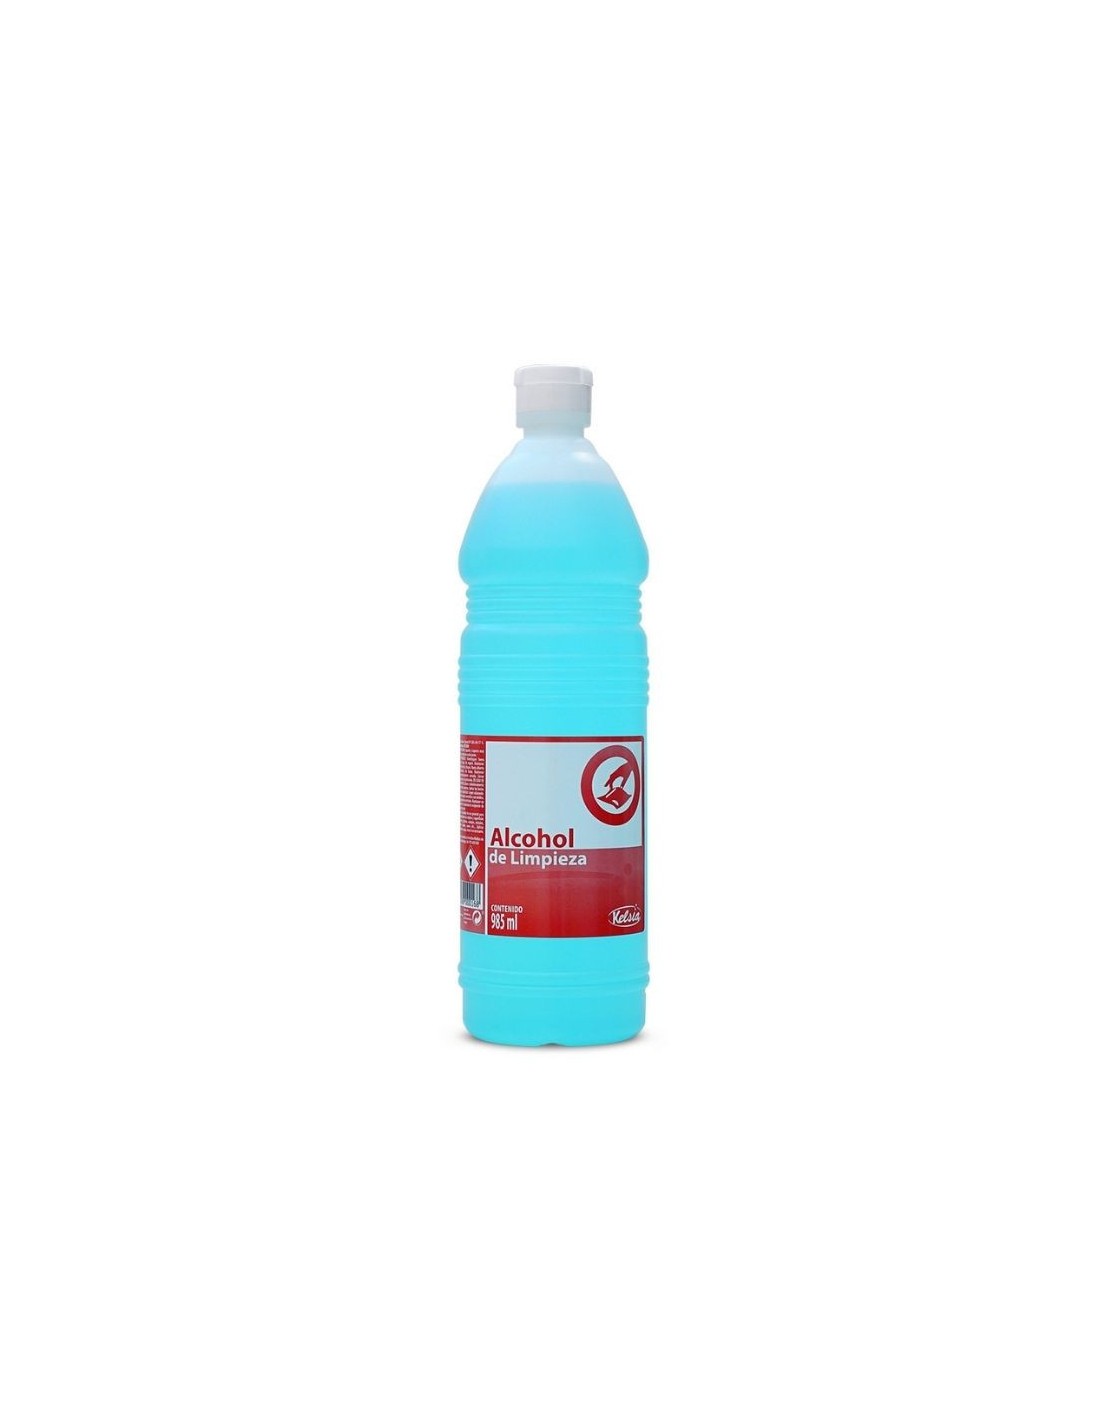 Comprar alcohol de limpieza Kelsia 985 ml en Distribuciones Batoy